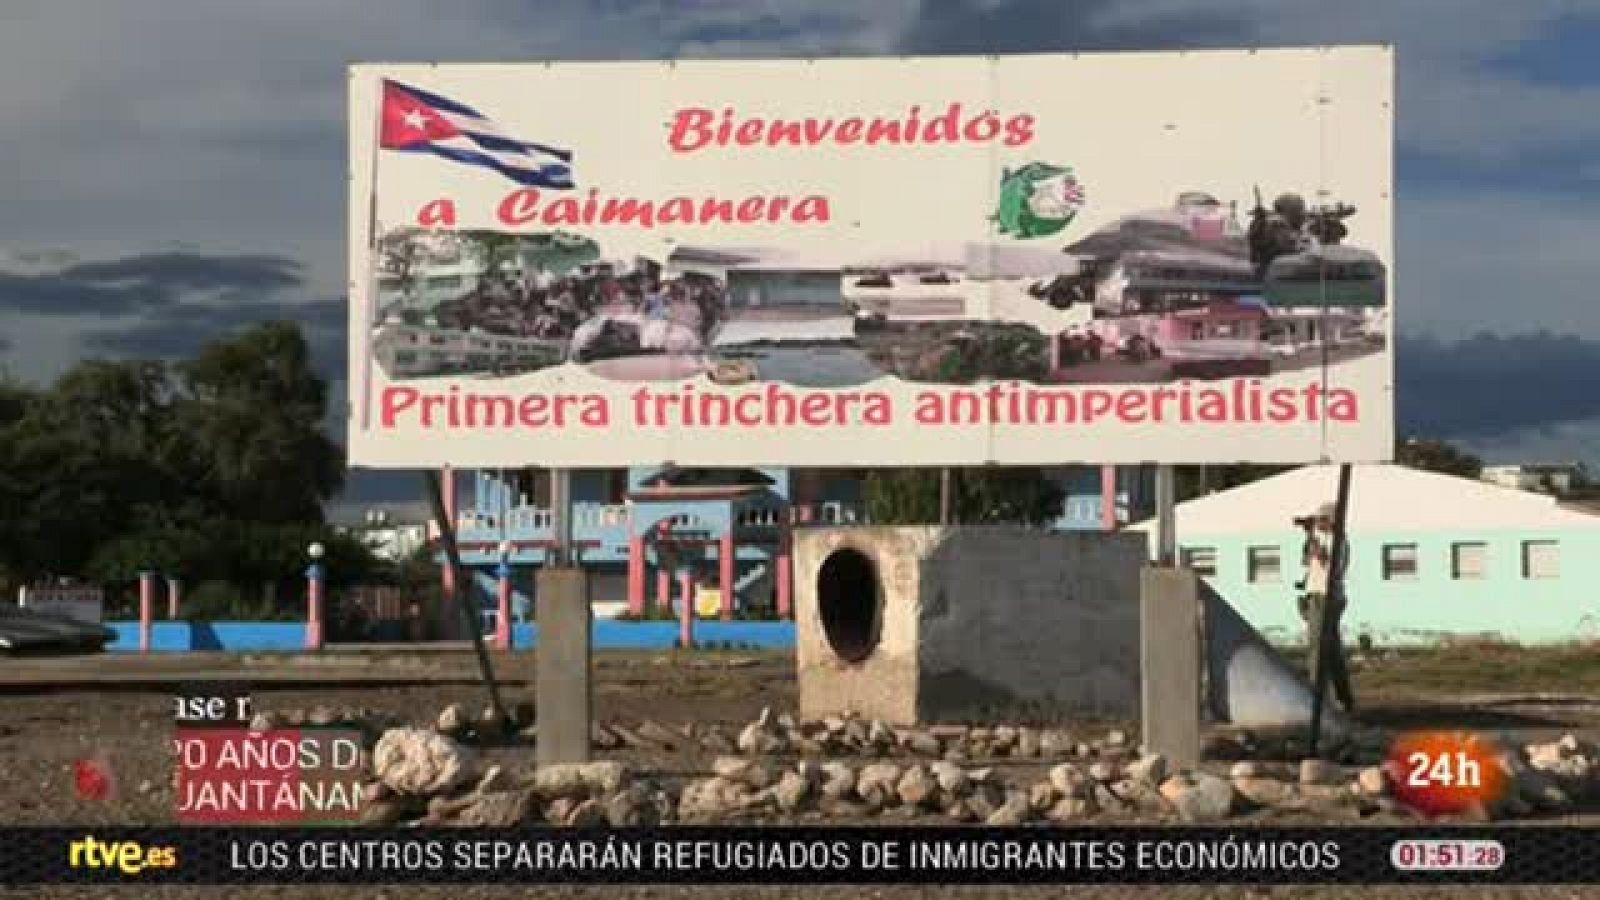 Latinoamérica en 24 horas: Caimarena, Cuba, "La primera trinchera antiimperialista" | RTVE Play